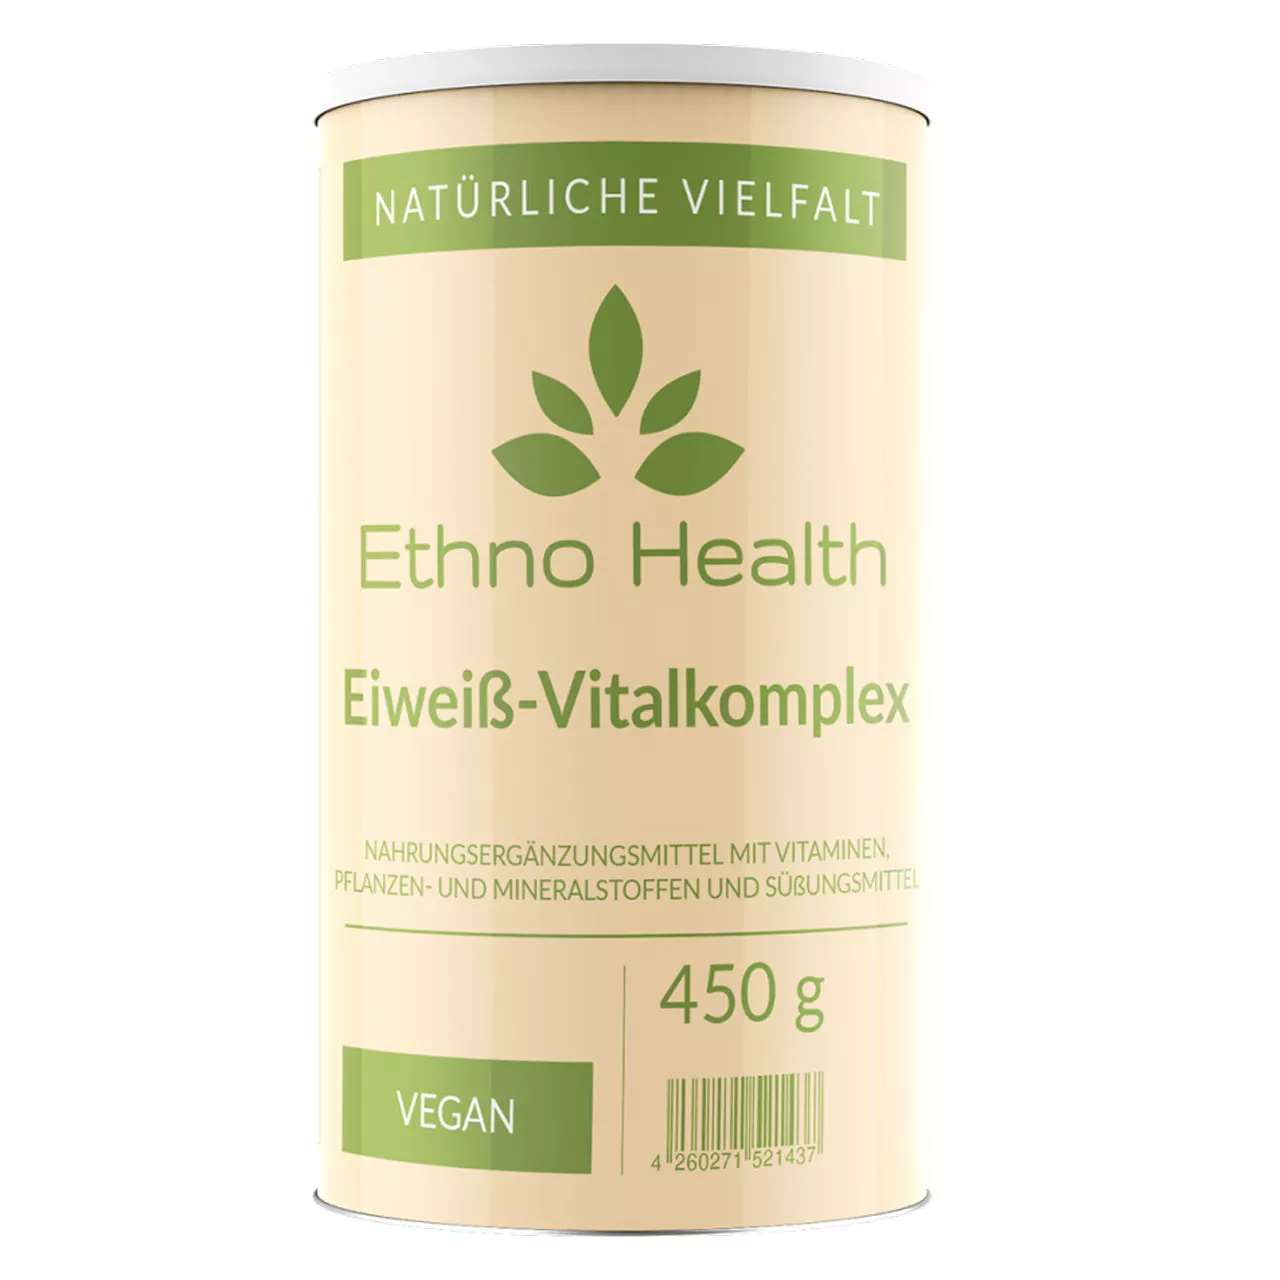 Eiweiß Vitalkomplex von Ethno Health beinhaltet 450 Gramm